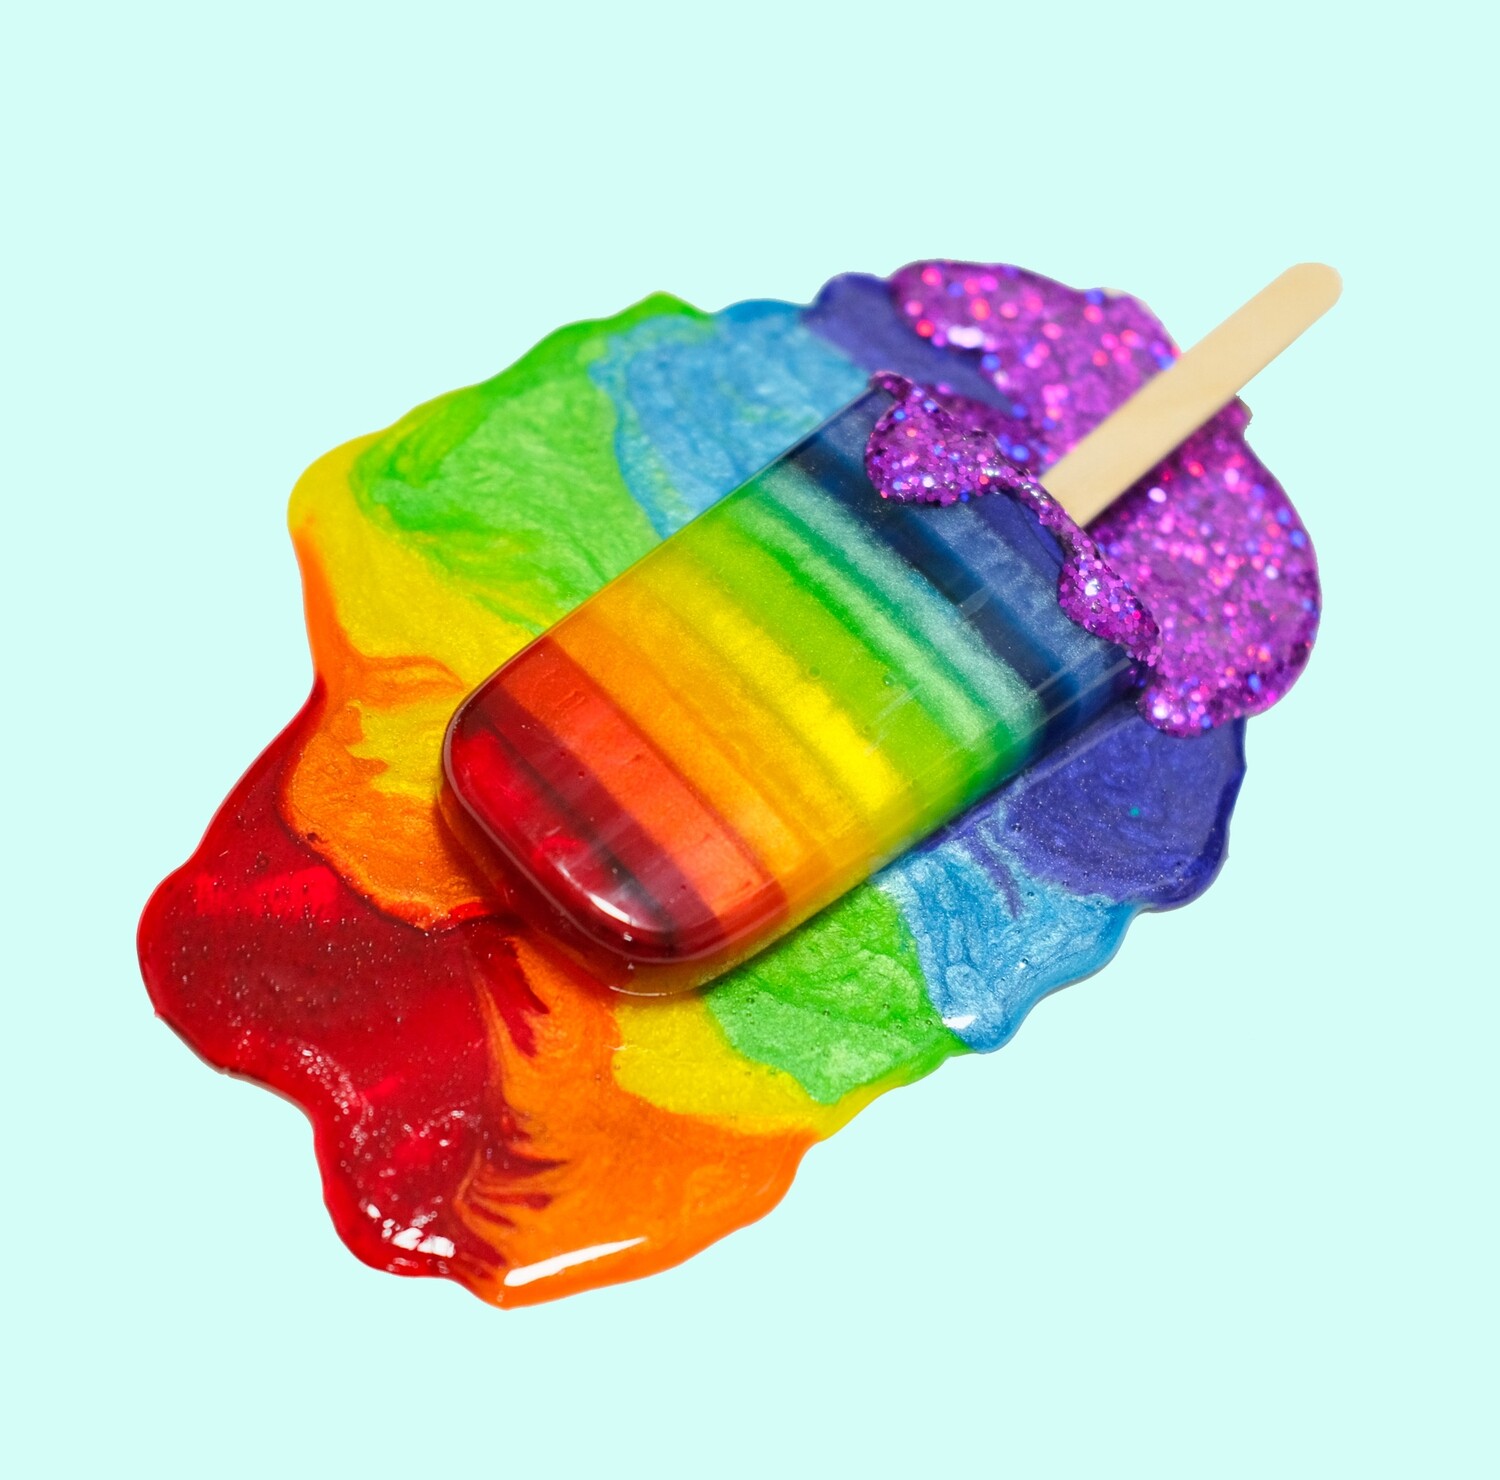 Double Rainbow Splat - Original Melting Pops - Melting Popsicle Resin Art